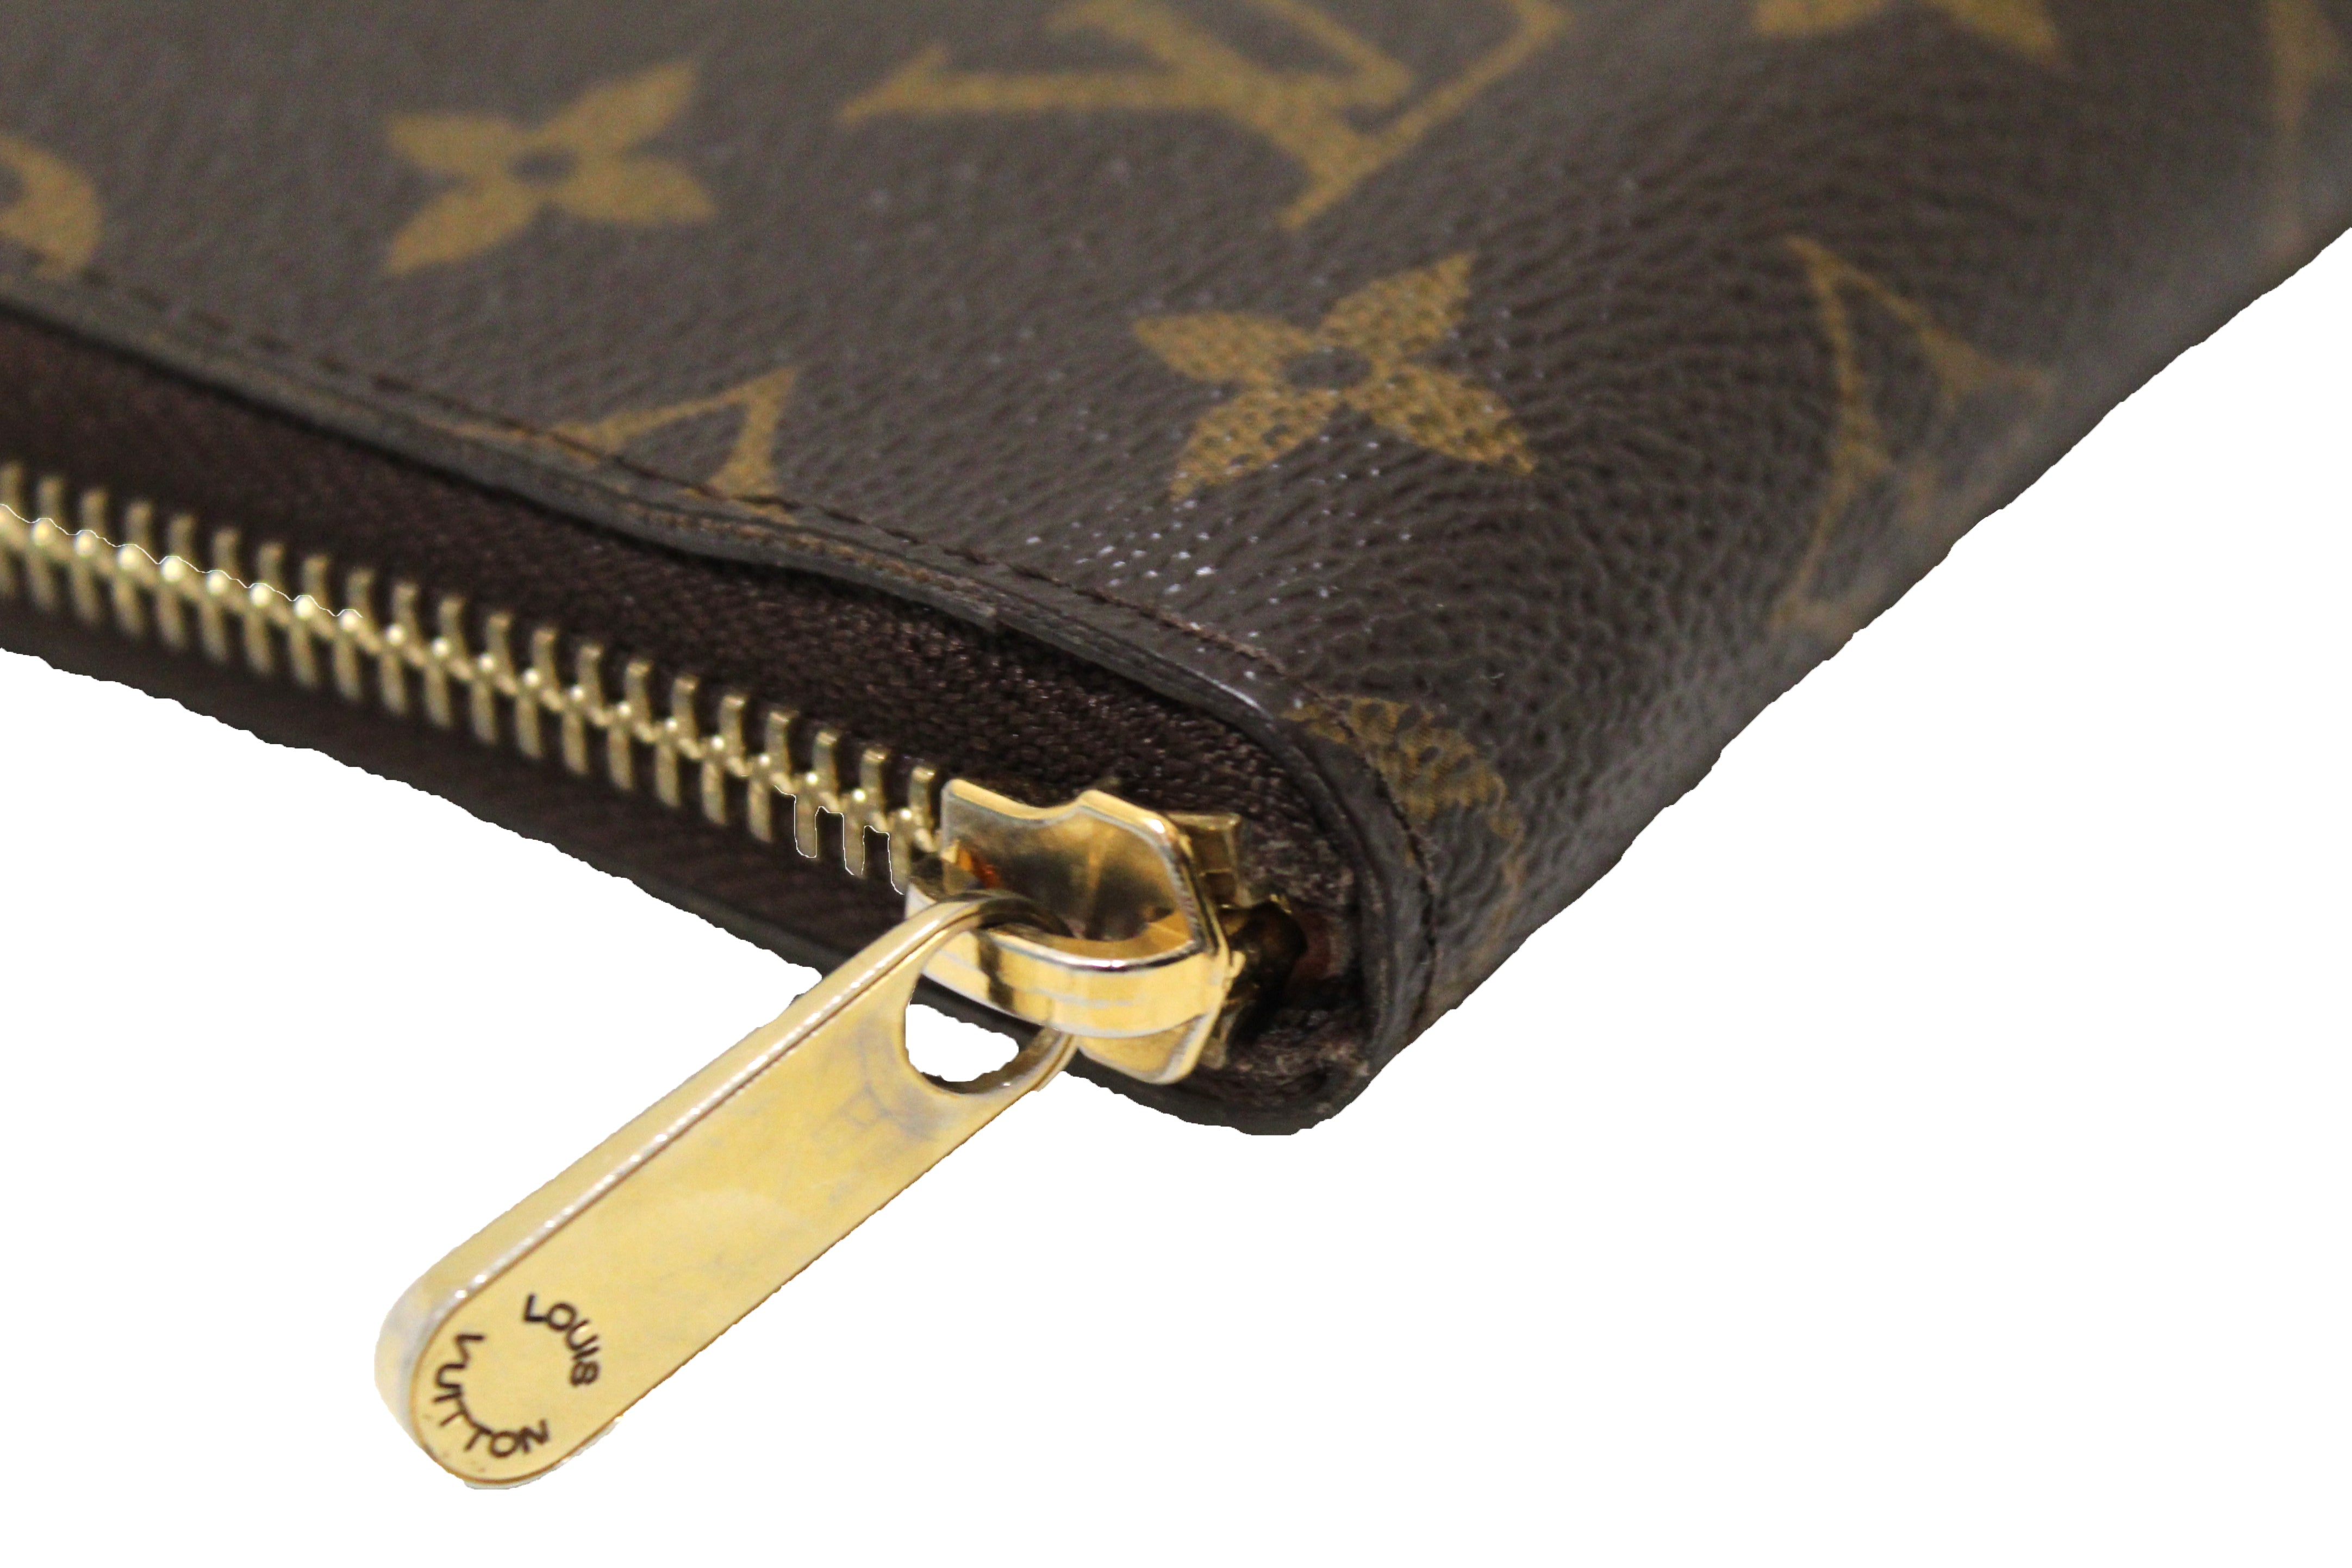 Louis Vuitton Zippy Wallet Limited Edition Monogram Canvas - ShopStyle